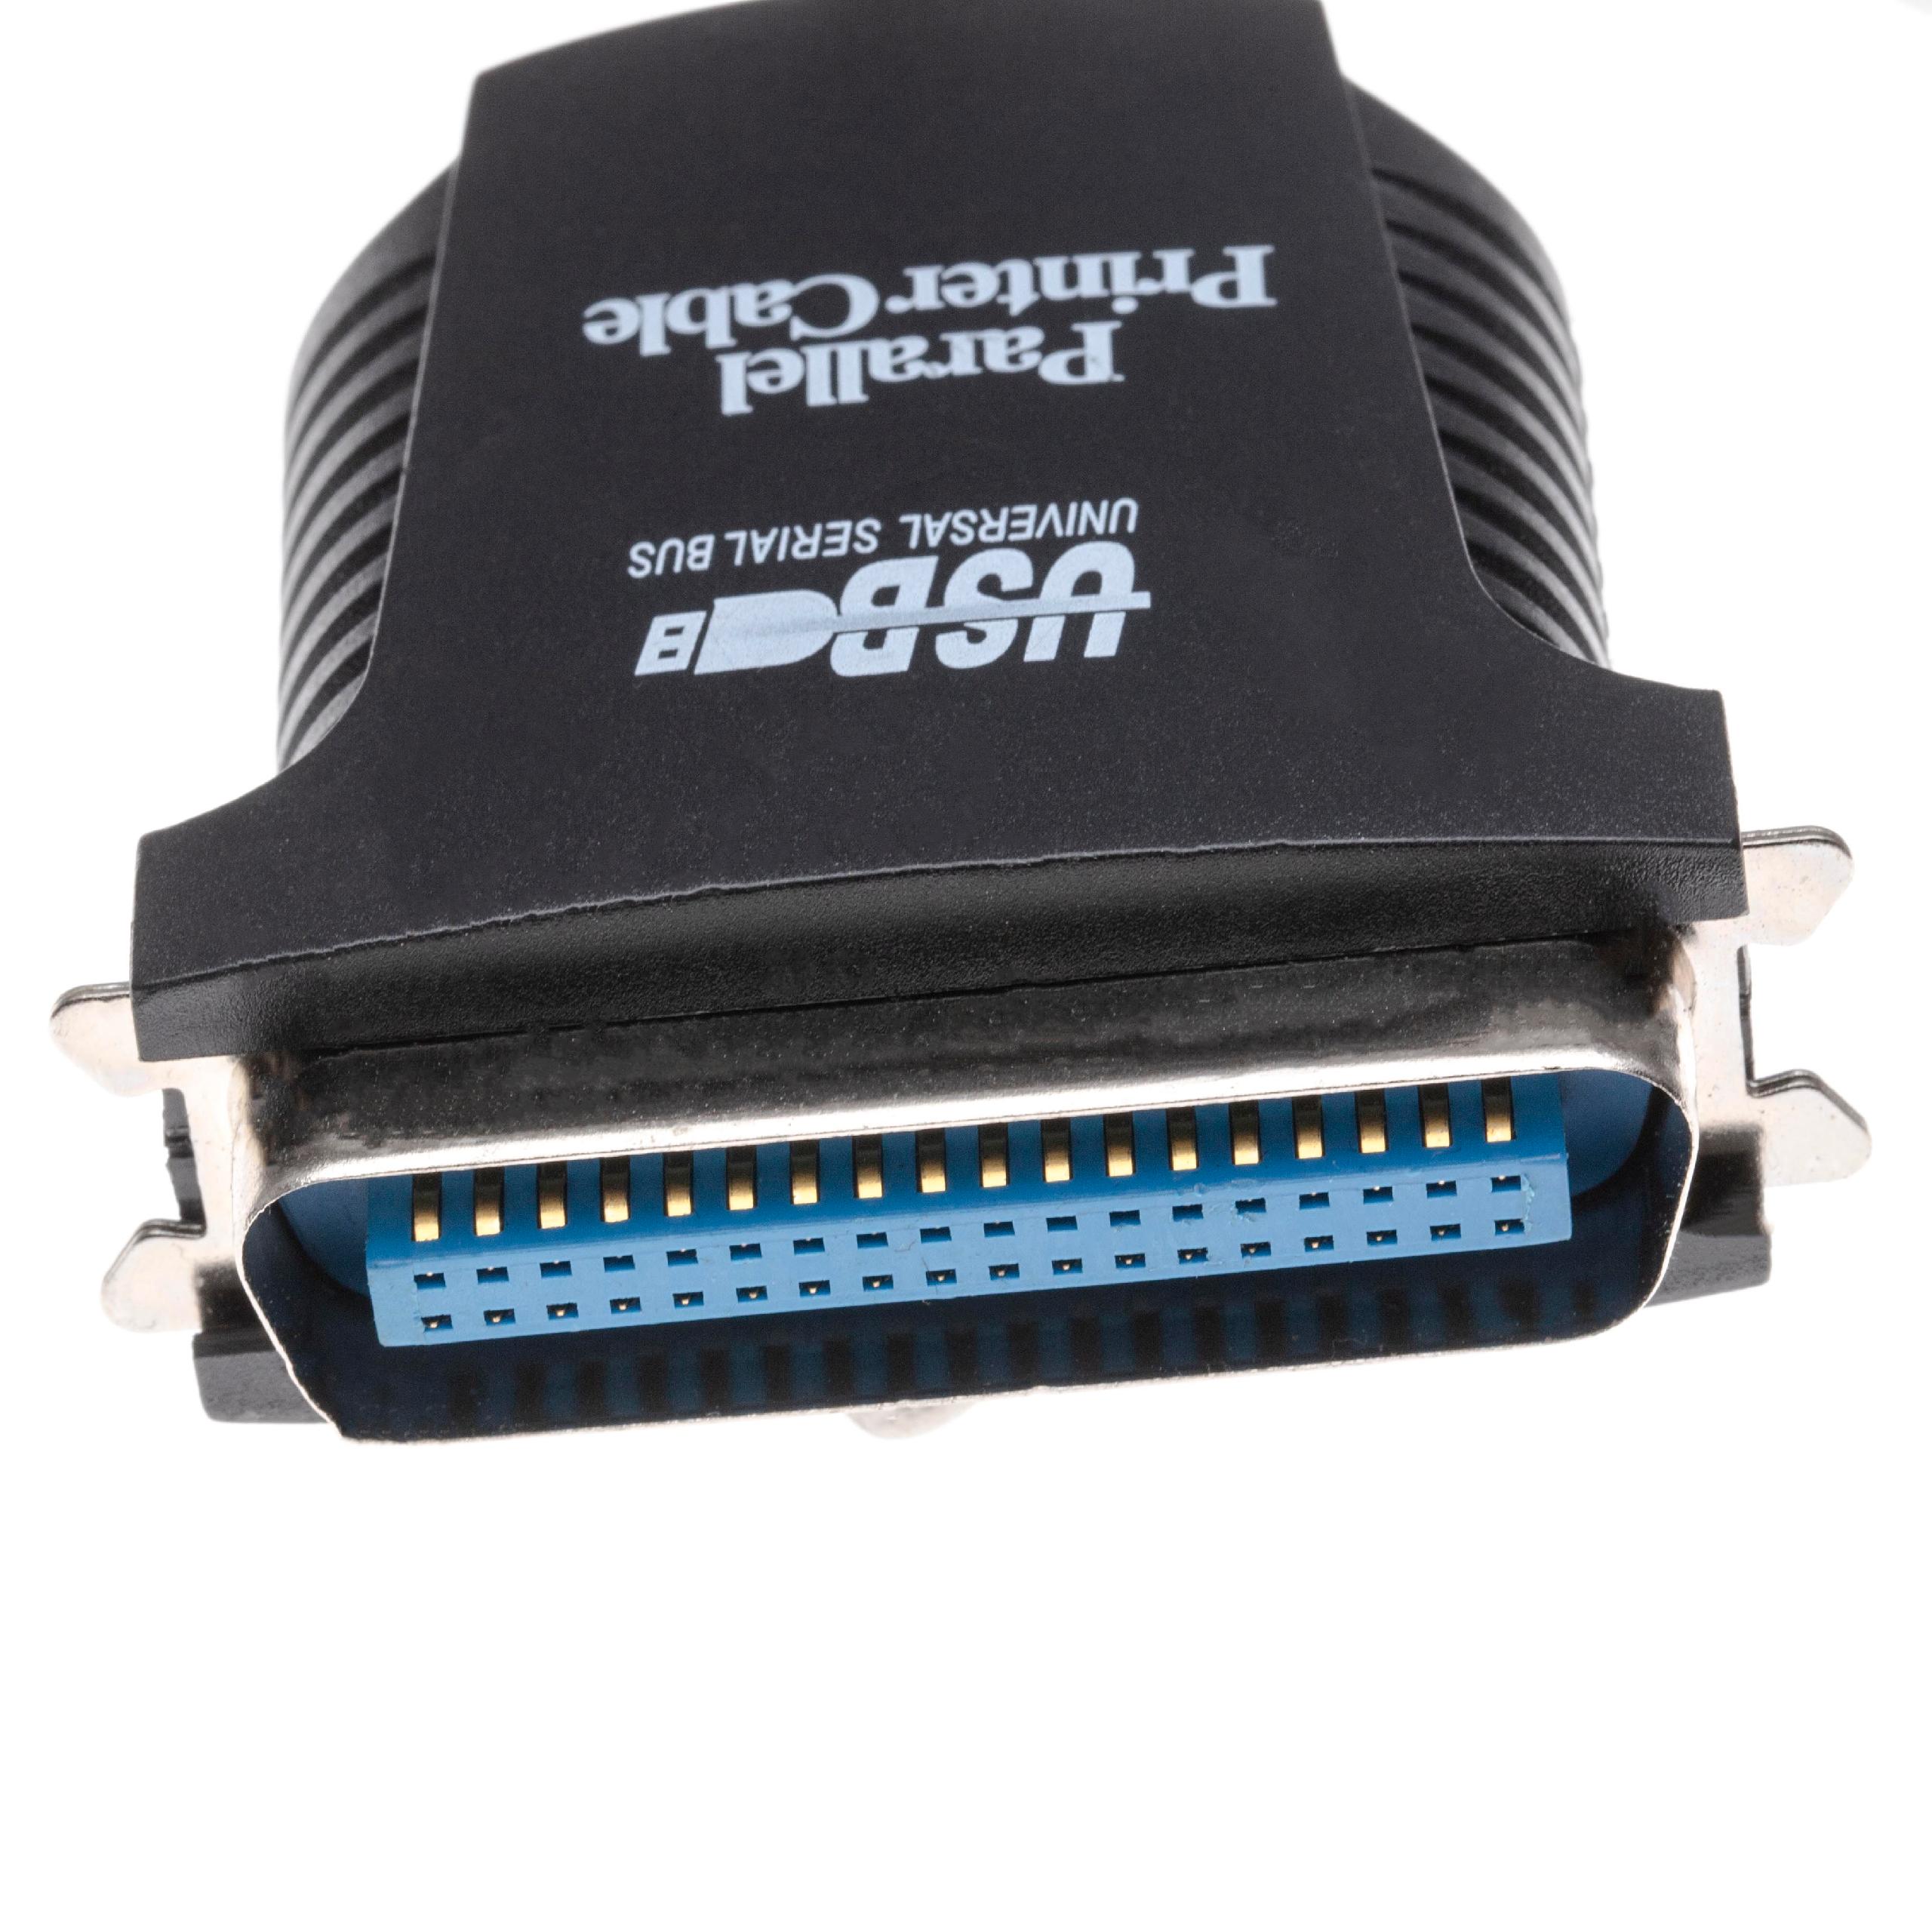 USB A zu 36 Pin Stecker Adapterkabel für Drucker, Scanner, Fax - USB Anschlusskabel